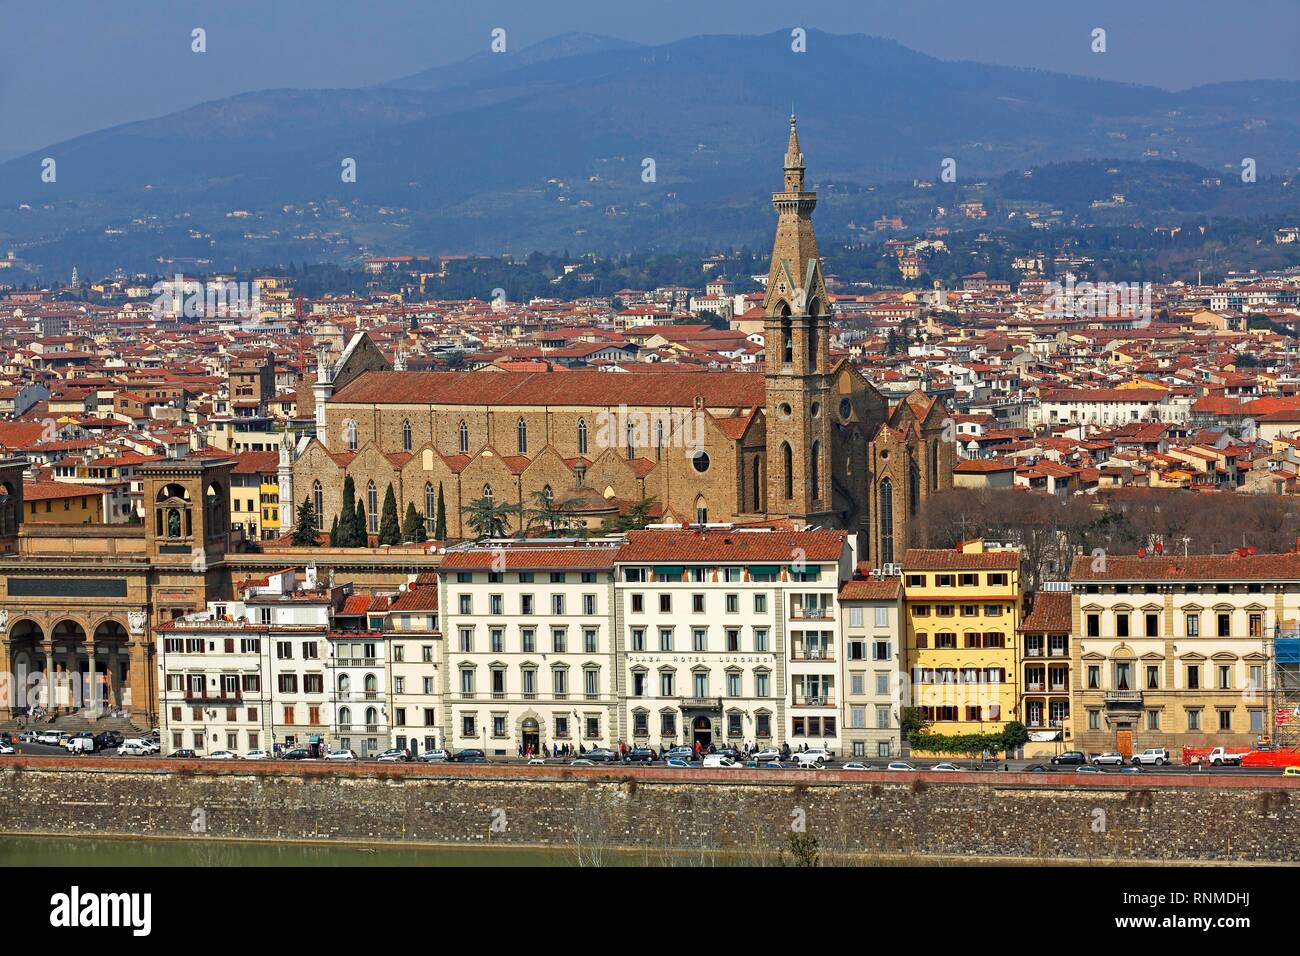 Paisaje urbano con la Basílica de Santa Croce en el casco antiguo de la ciudad, Florencia, Toscana, Italia Foto de stock